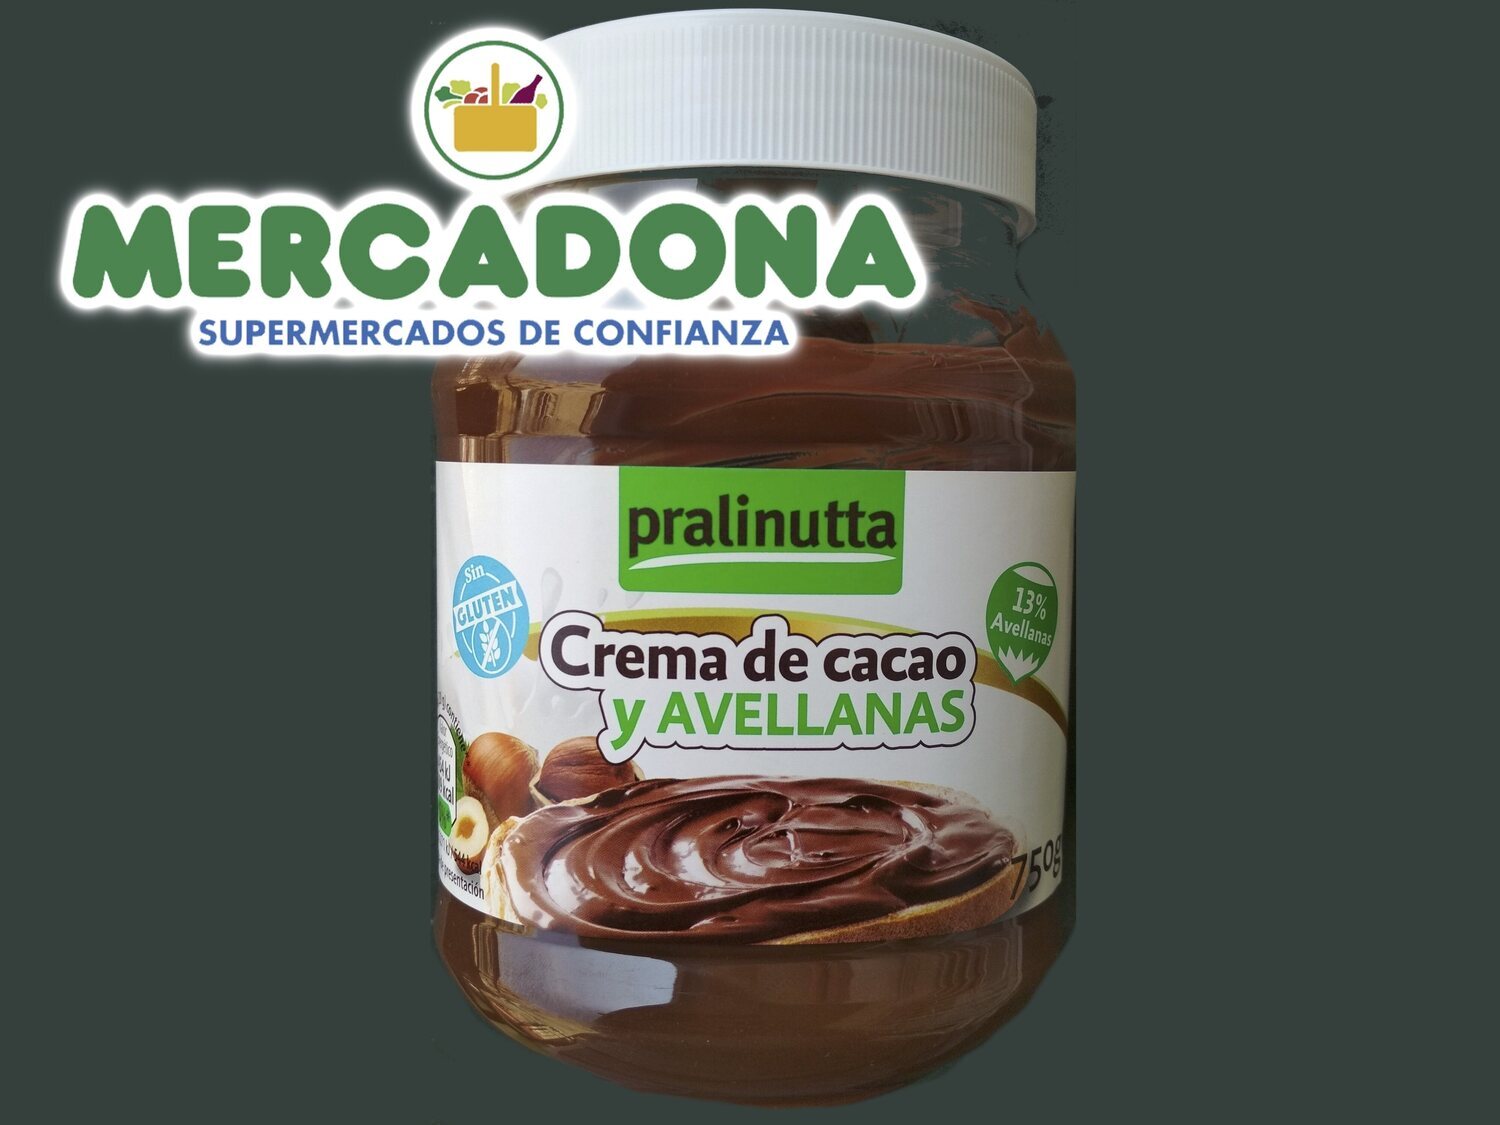 Mercadona retira de la venta la popular Pralinutta, copia de Nutella, y las redes estallan